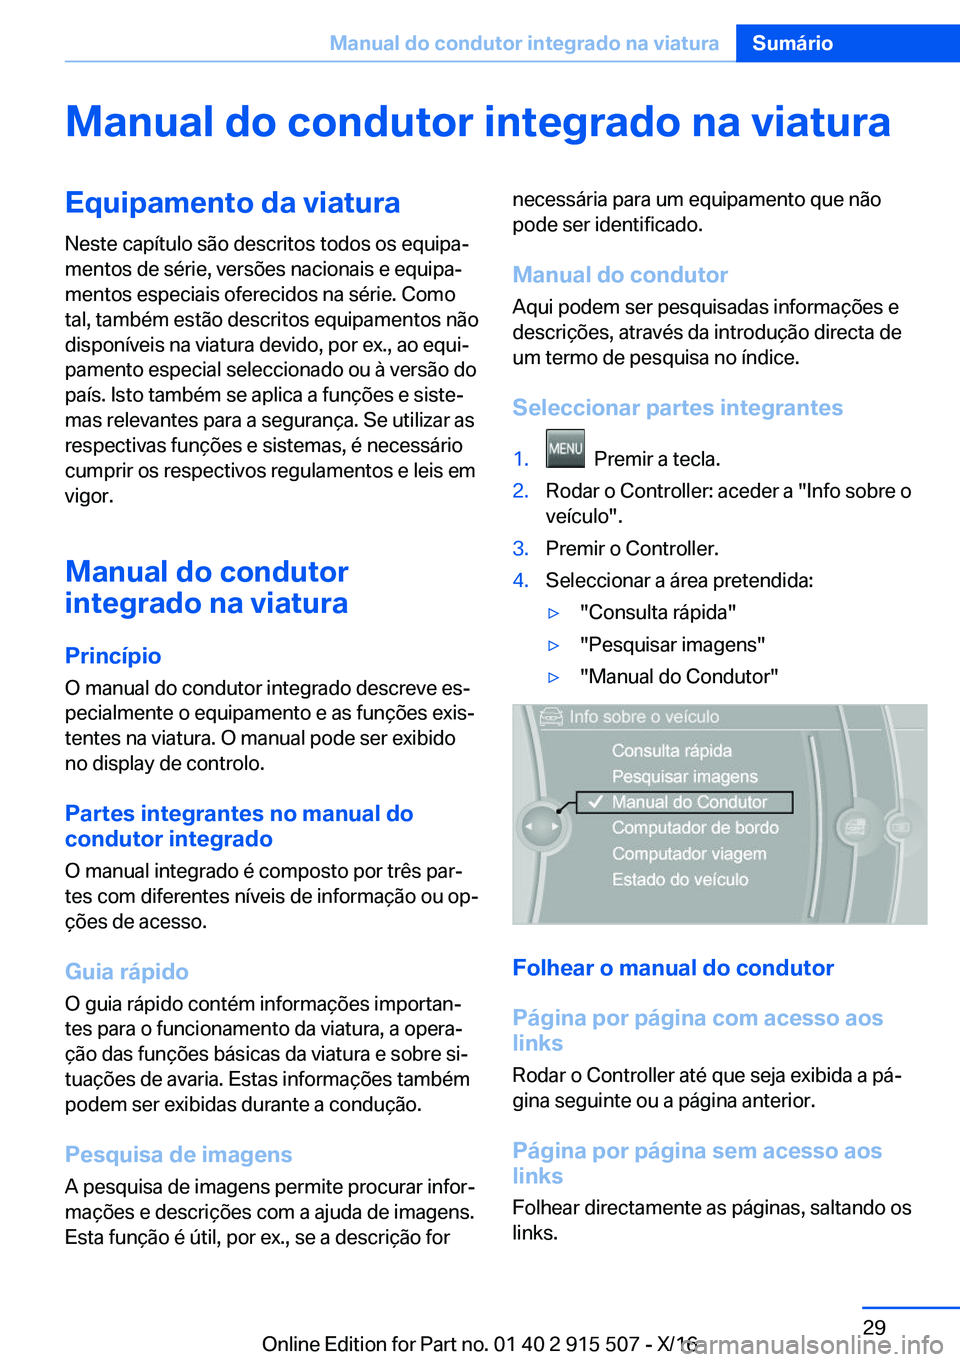 BMW X5 2017  Manual do condutor (in Portuguese) �M�a�n�u�a�l��d�o��c�o�n�d�u�t�o�r��i�n�t�e�g�r�a�d�o��n�a��v�i�a�t�u�r�a�E�q�u�i�p�a�m�e�n�t�o��d�a��v�i�a�t�u�r�a
�N�e�s�t�e� �c�a�p�í�t�u�l�o� �s�ã�o� �d�e�s�c�r�i�t�o�s� �t�o�d�o�s� �o�s�